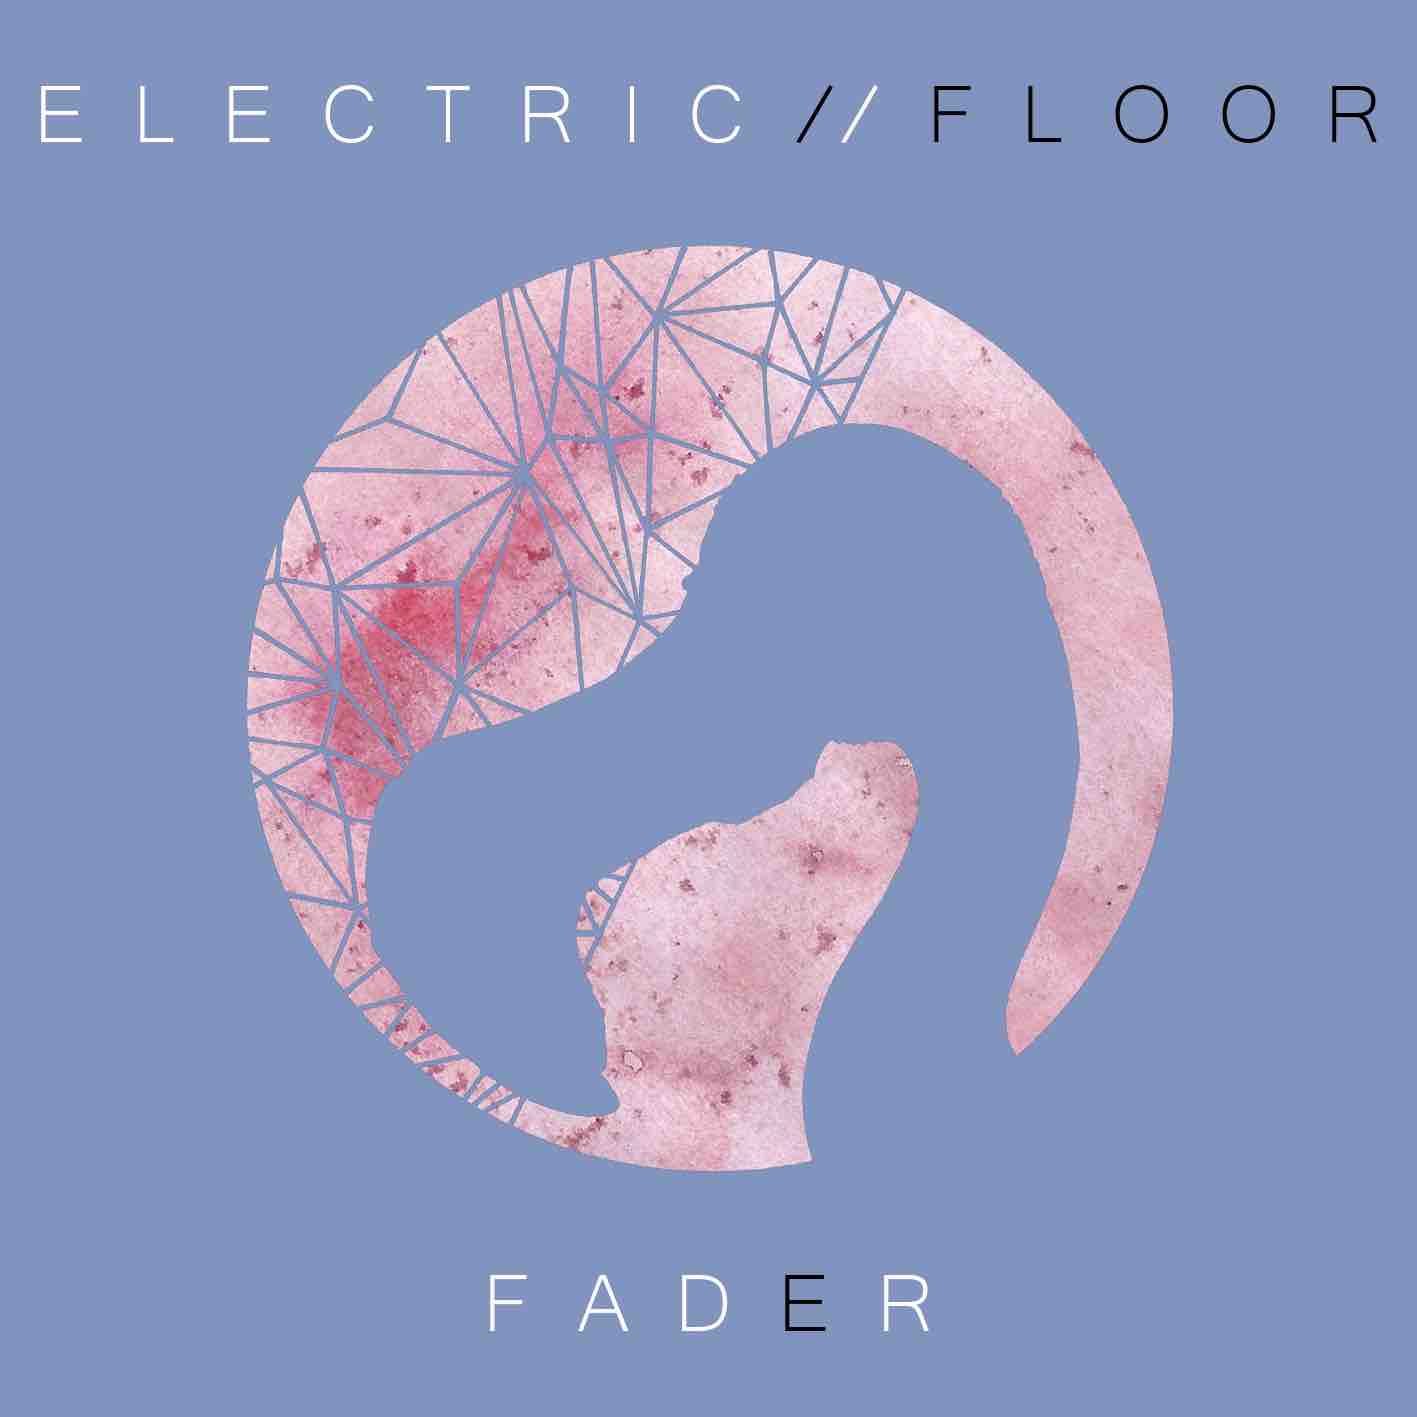 Fader, il nuovo album degli Eletric Floor